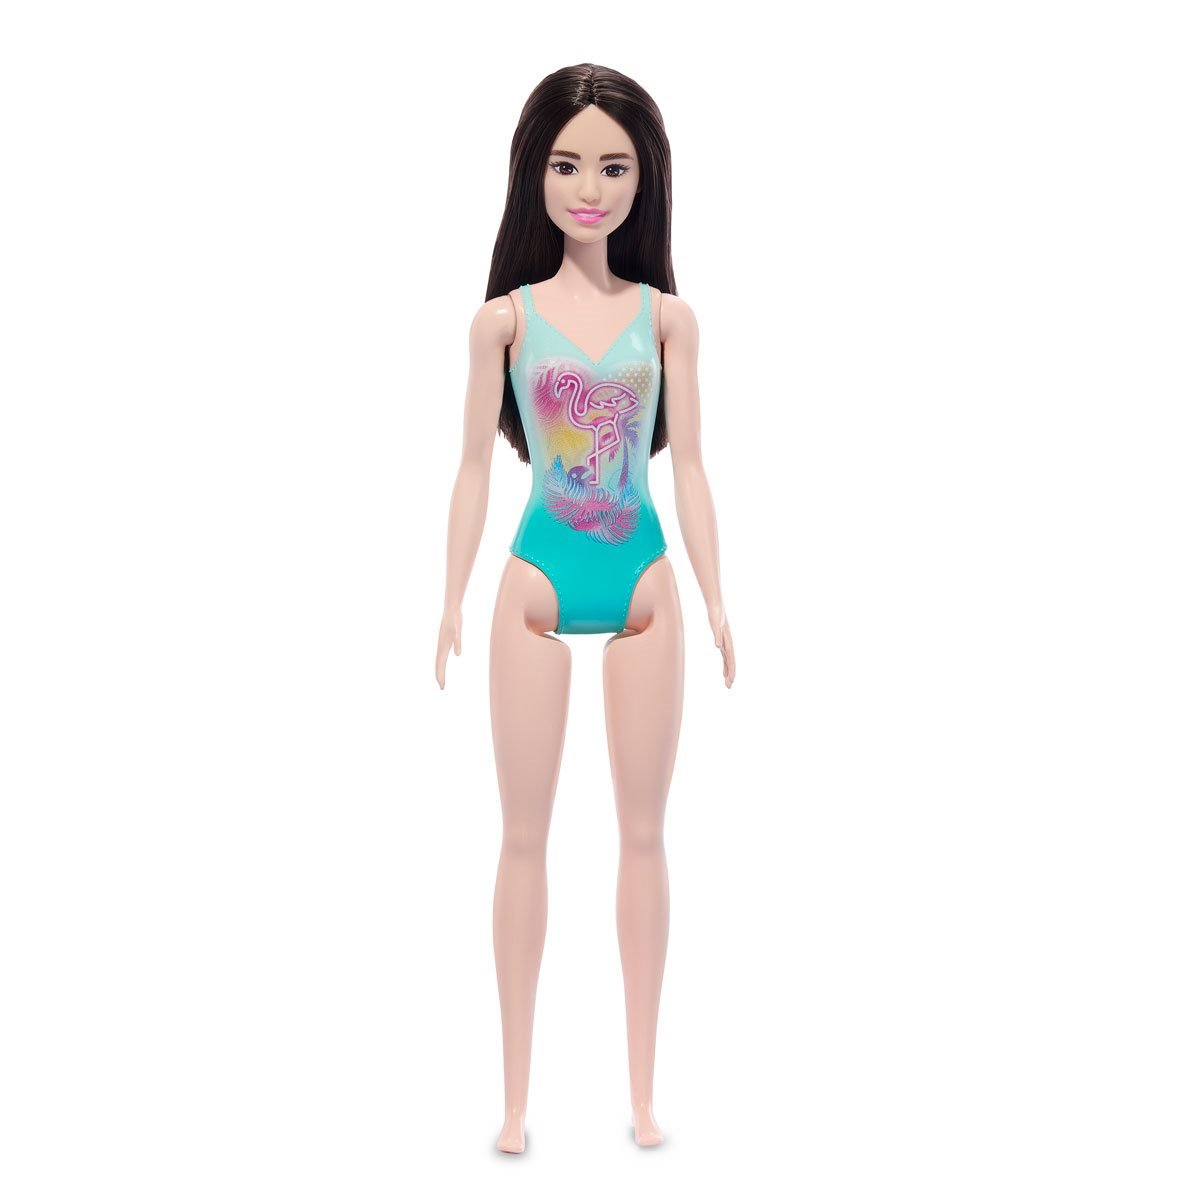 Barbie Ken Deluxe Beach Doll, Action Figures & Dolls